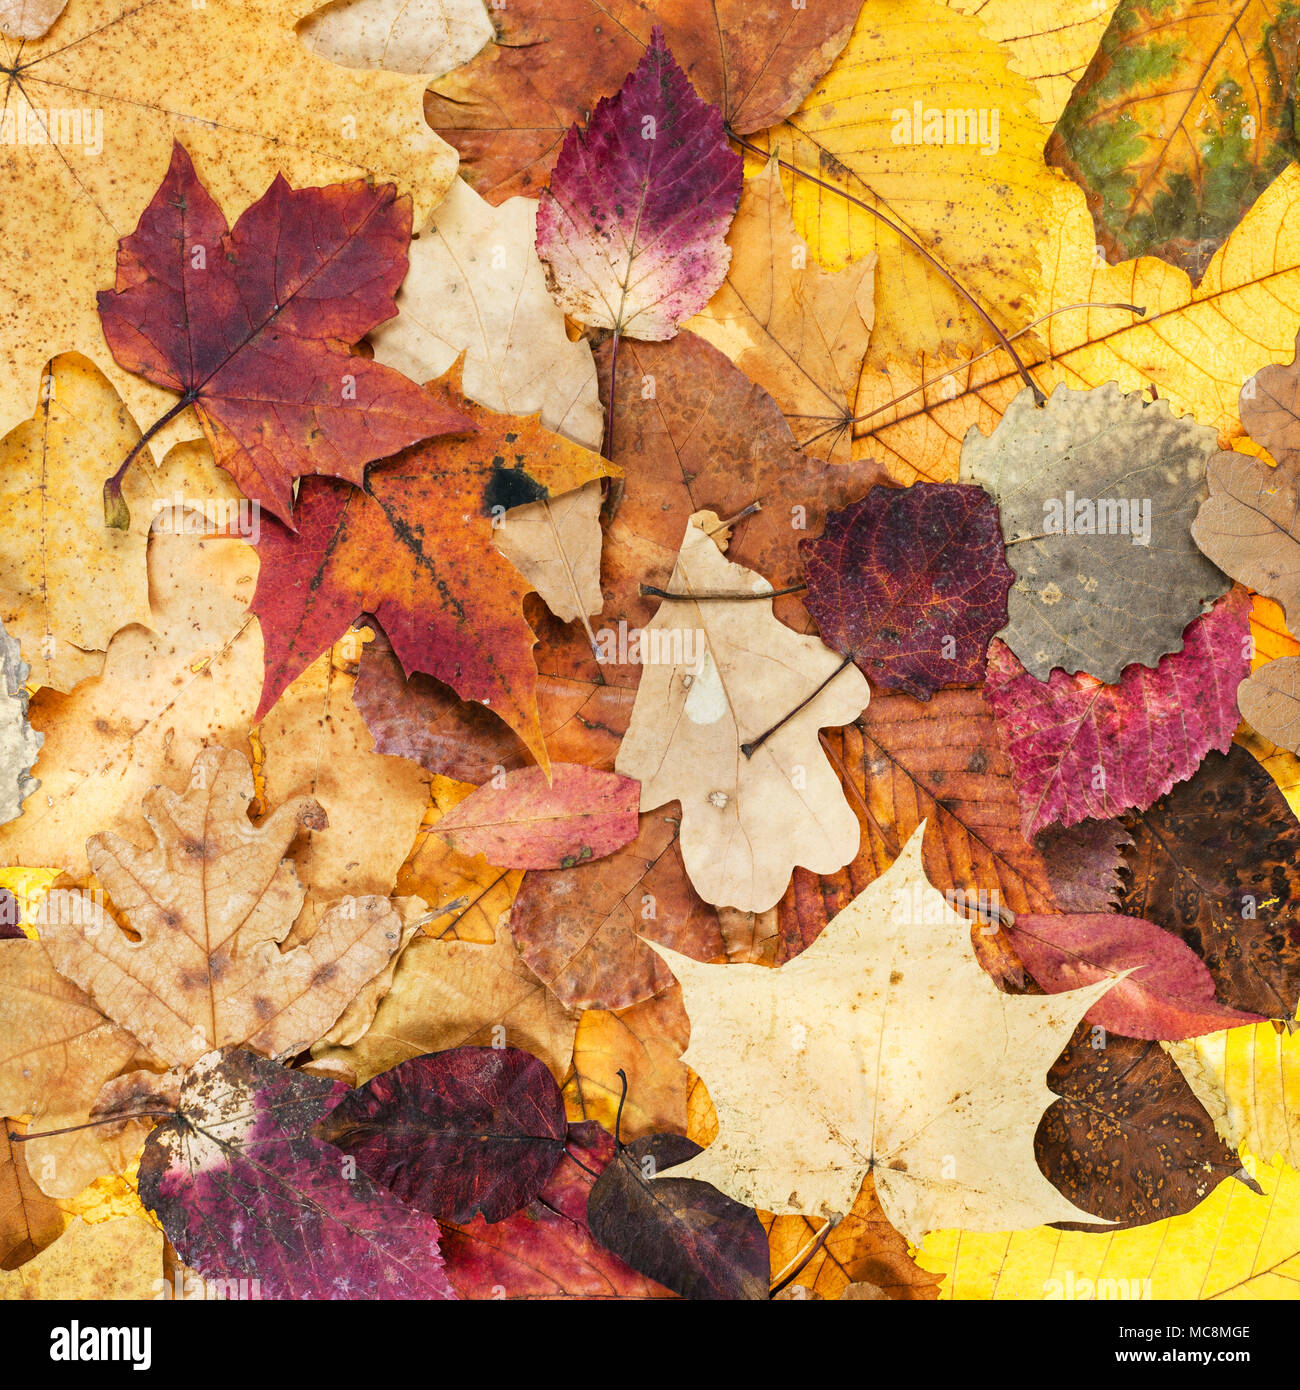 Natürliche Herbst Hintergrund aus verschiedenen verschiedenfarbige Blätter von Eichen, Ahorn, Erle, Malus, Aspen Bäume Stockfoto